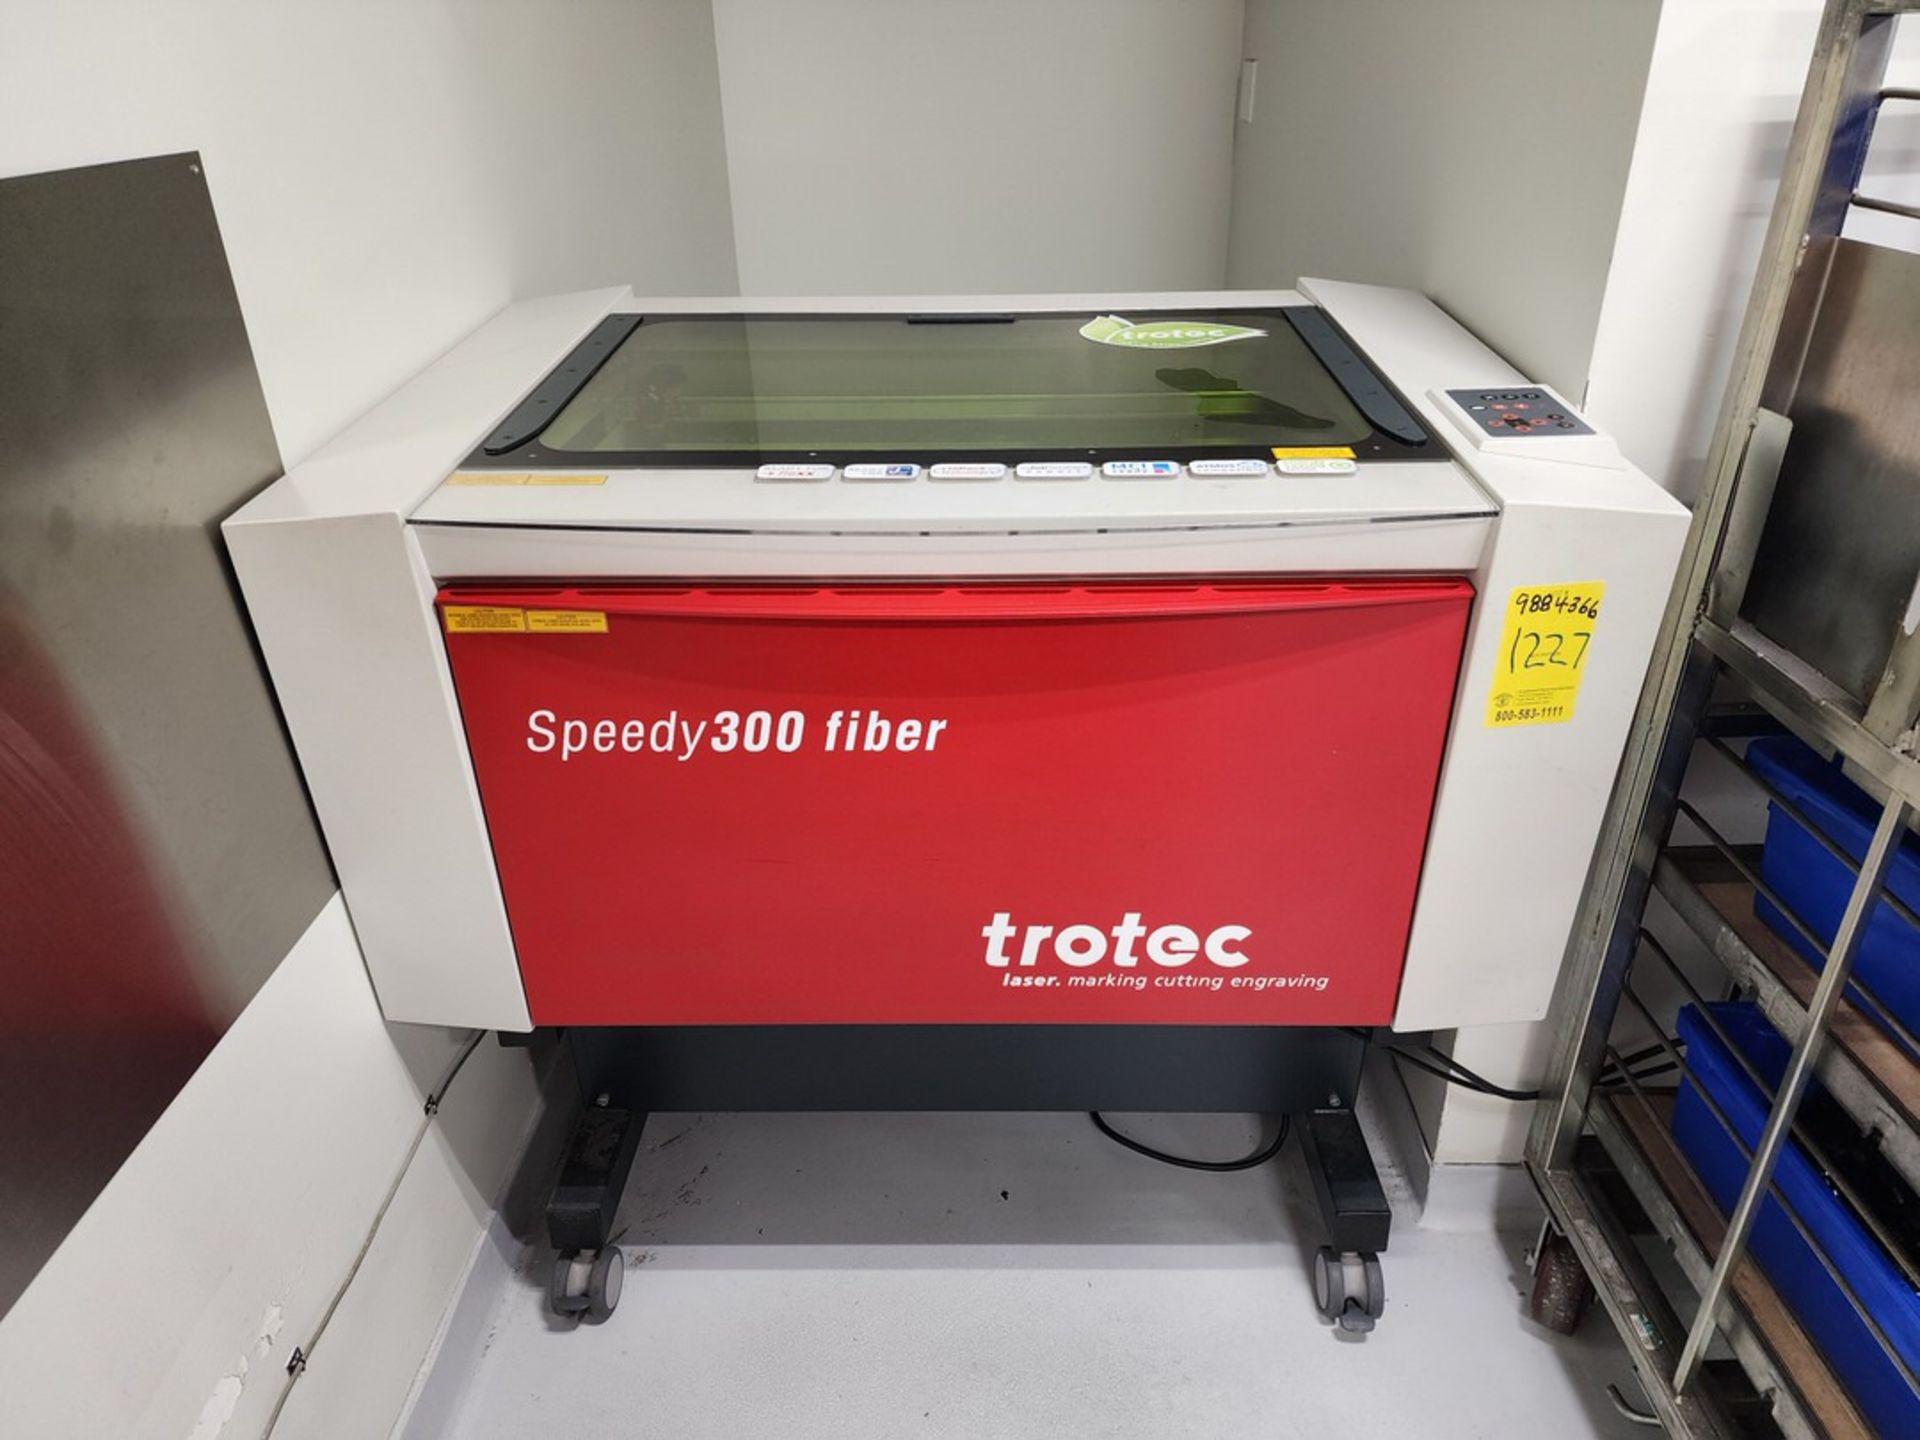 Trotec Speedy 300 Fiber Laser Marking Cutting Engraving Machine (Asset# 9884366)